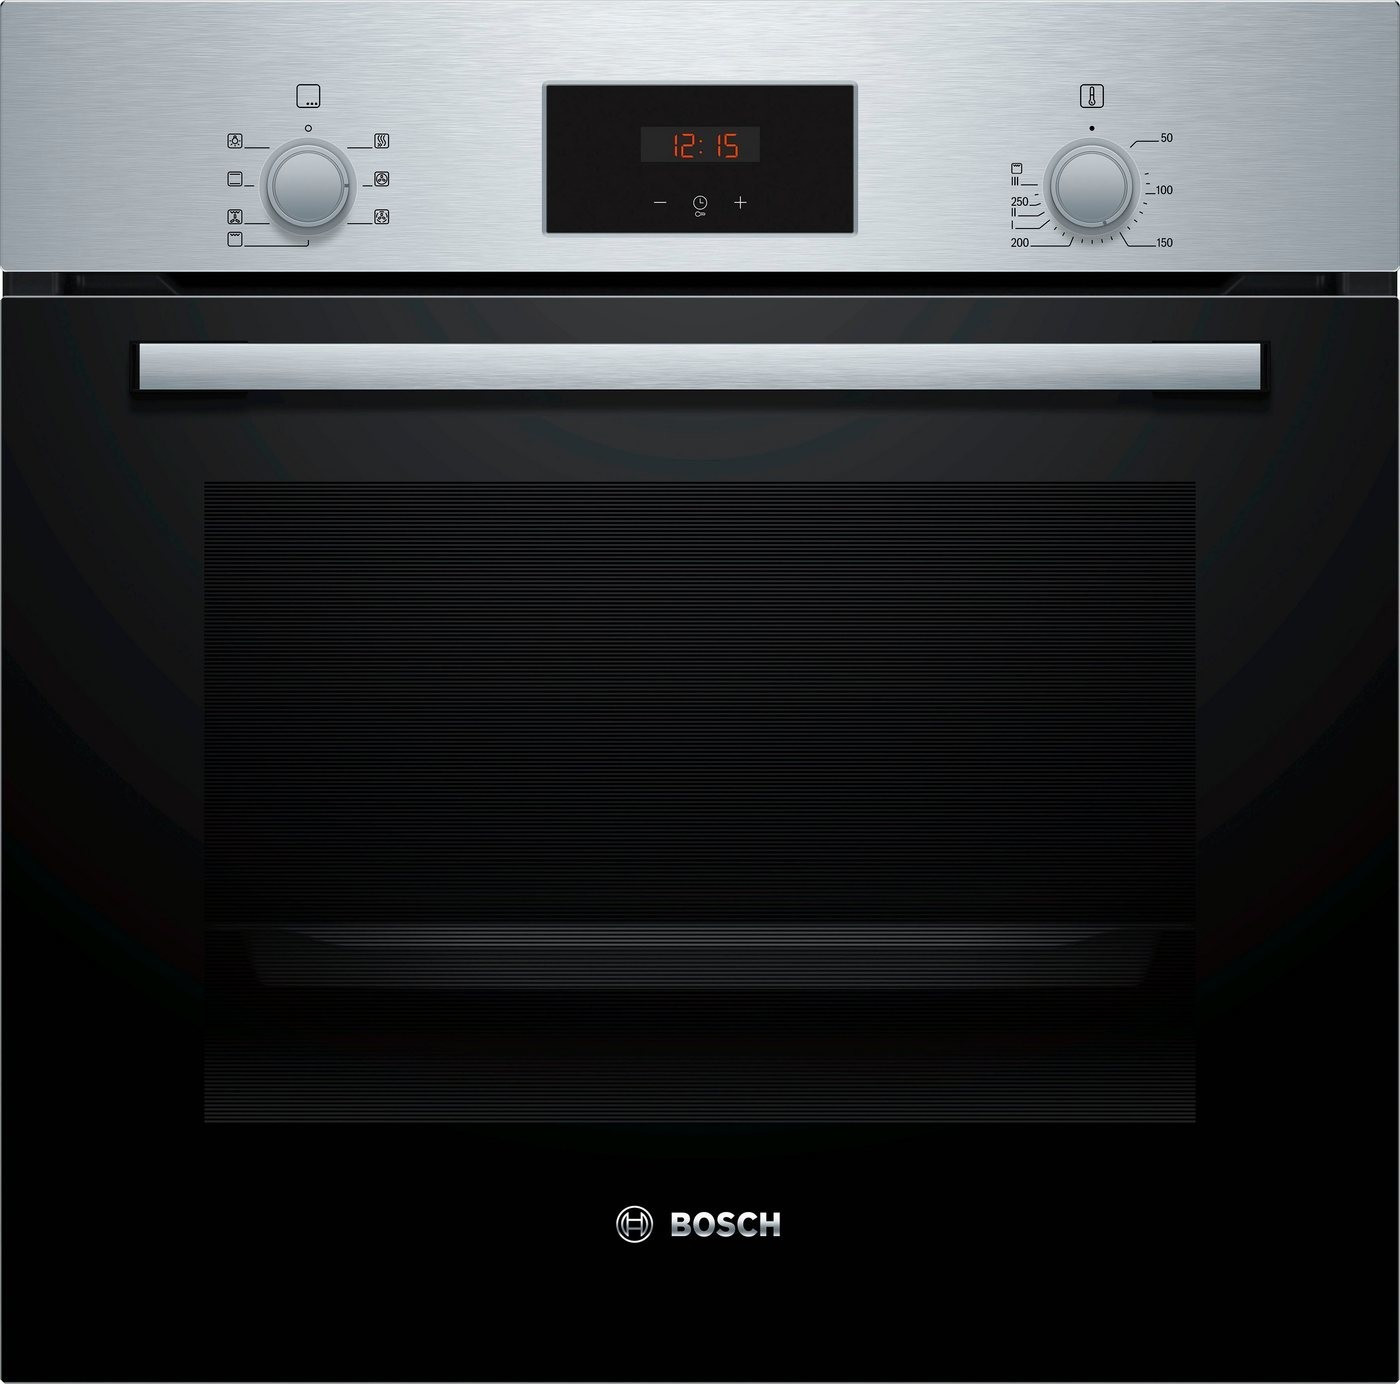 Εντοιχιζόμενο Σετ Bosch Φούρνος 66L & Κεραμικές Εστίες, HBD231VR60, Inox Εντοιχιζόμενα bosch 3